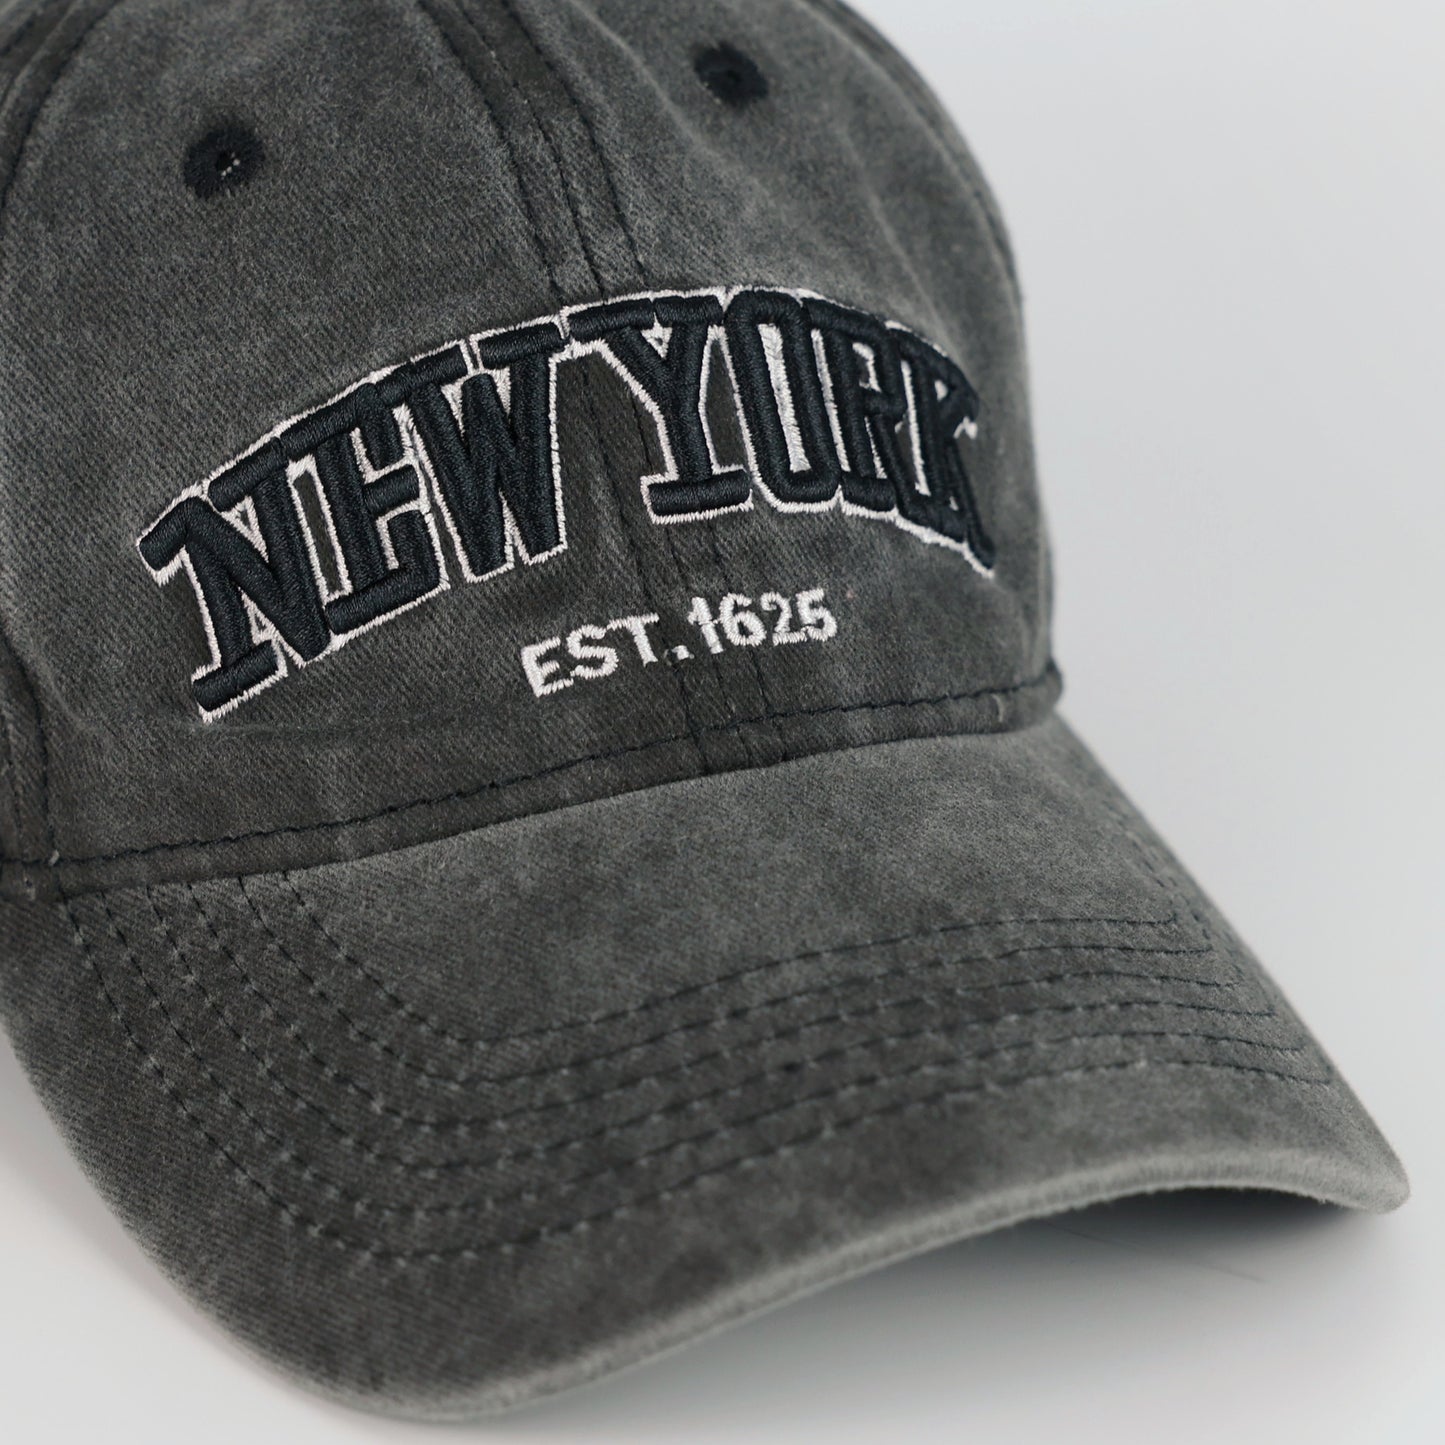 NY WASHED BASEBALL HAT